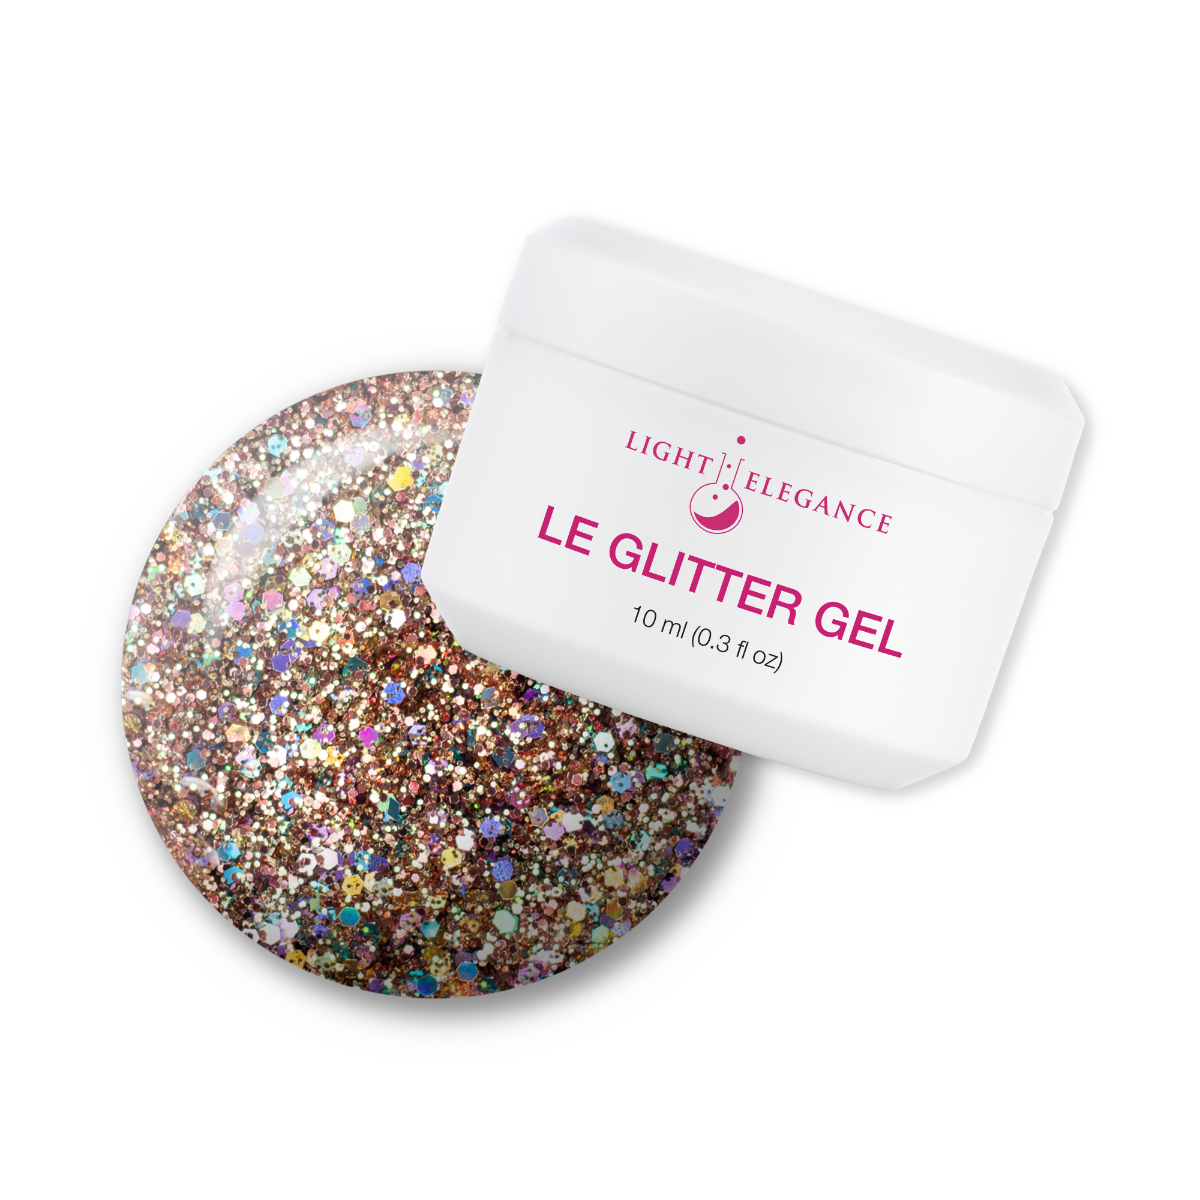 Light Elegance Glitter Gel - Sophia :: New Packaging